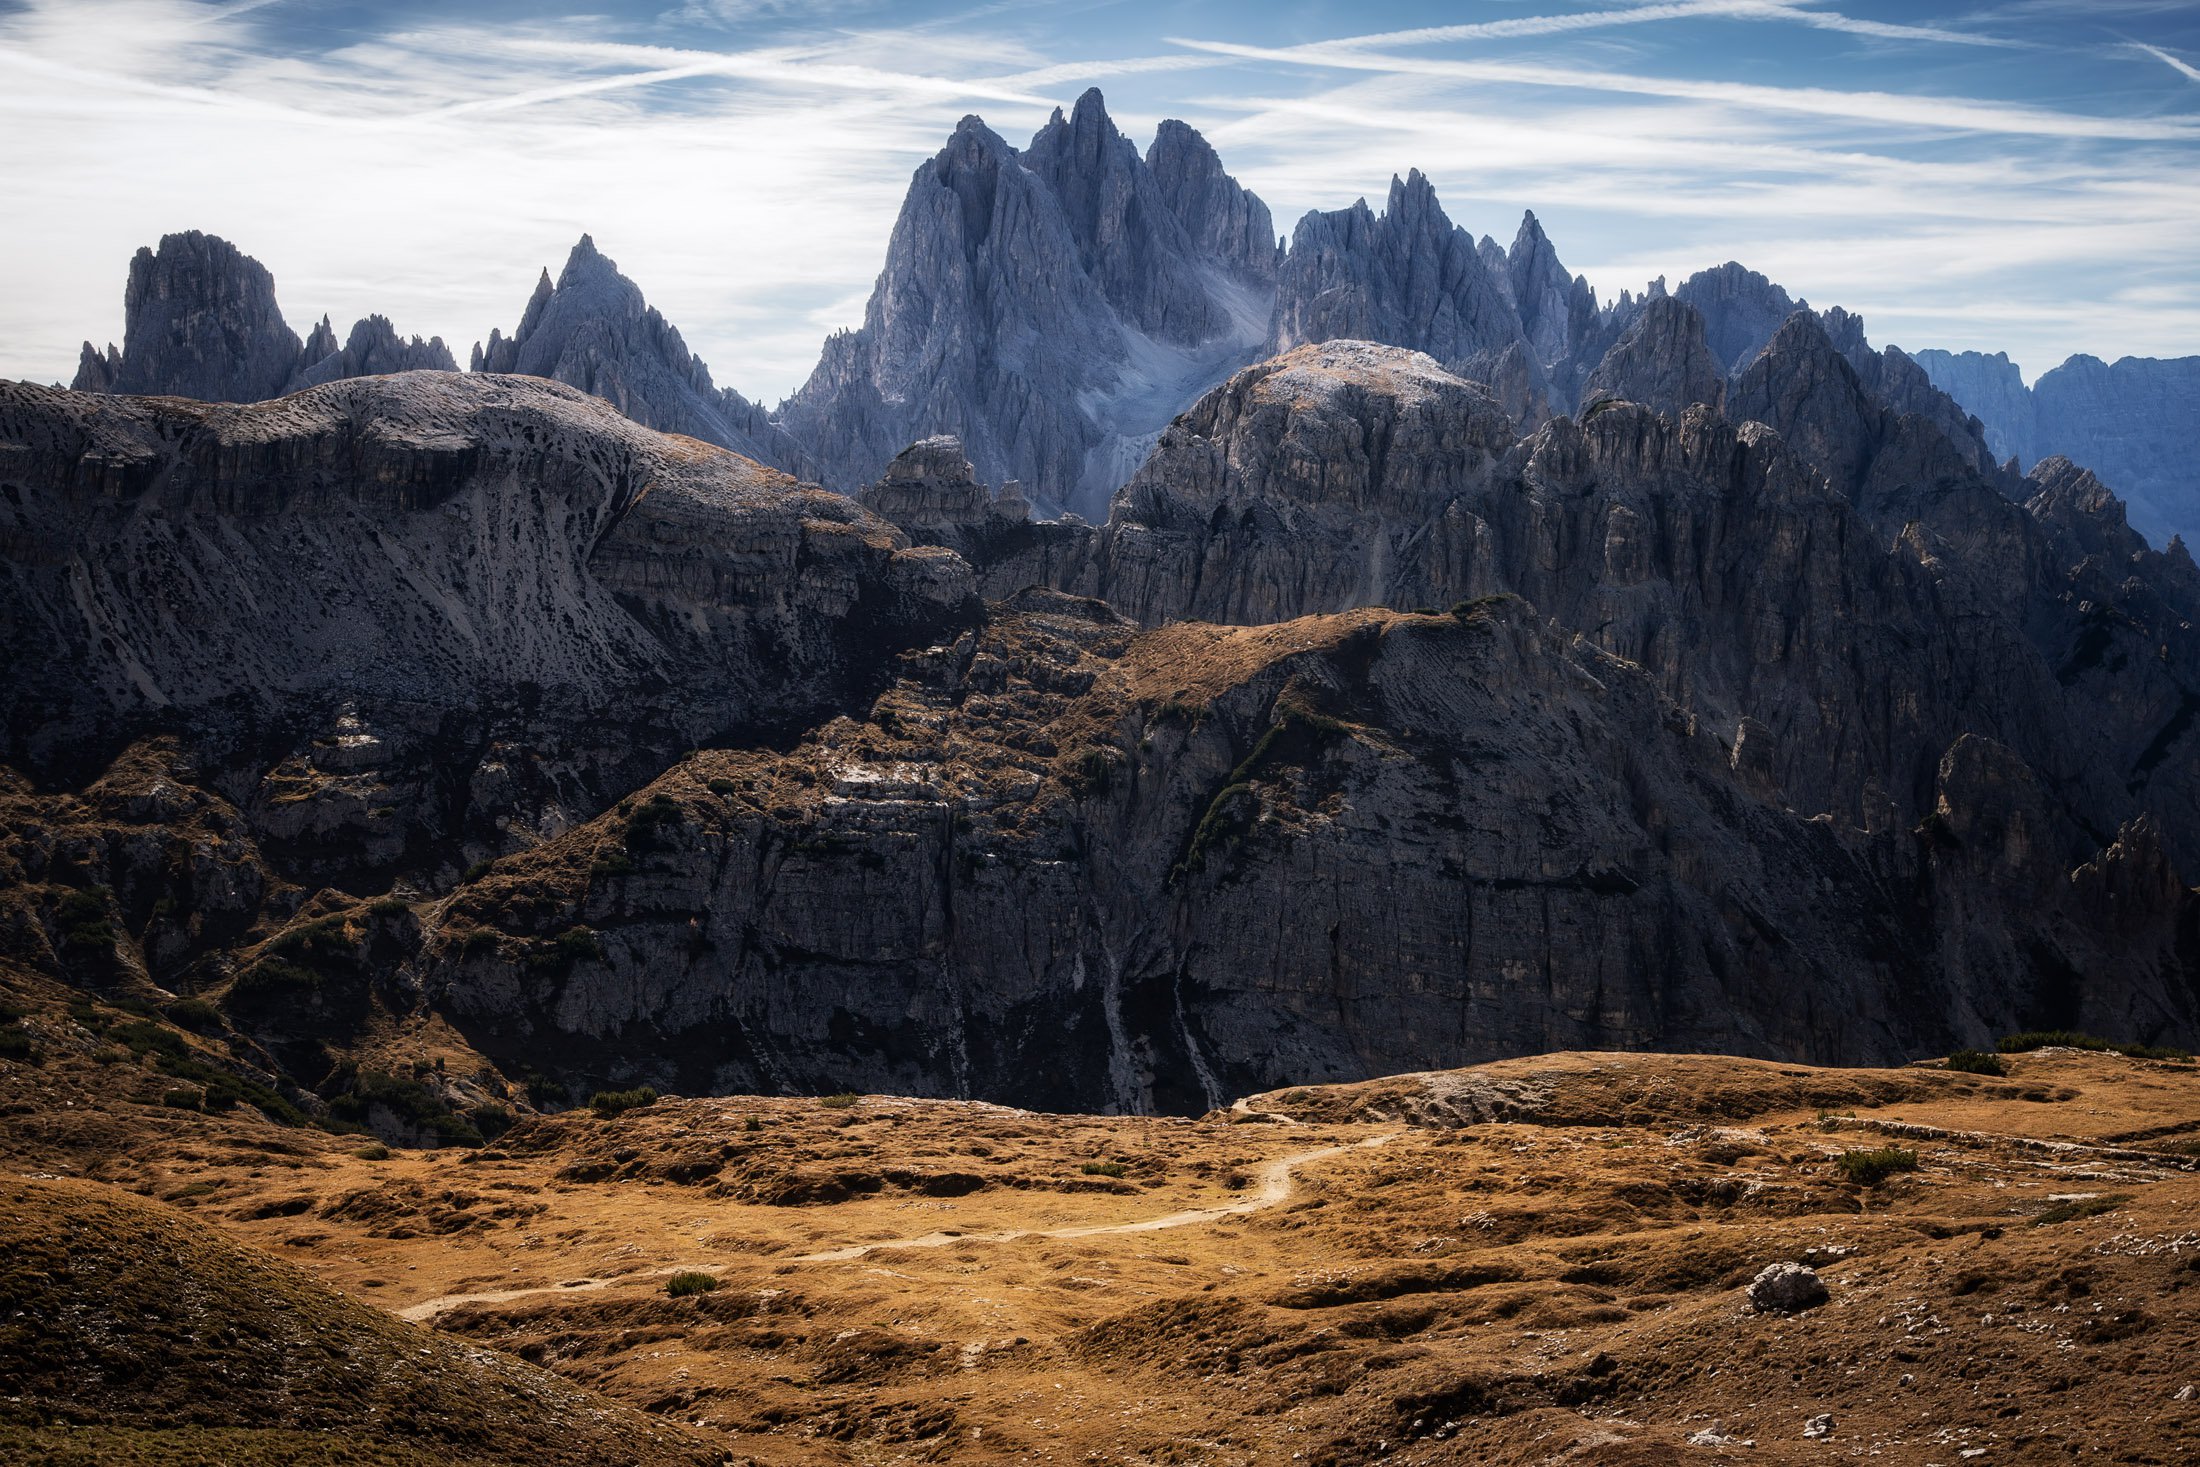 Доломитовые Альпы, Италия — Фото №1325368